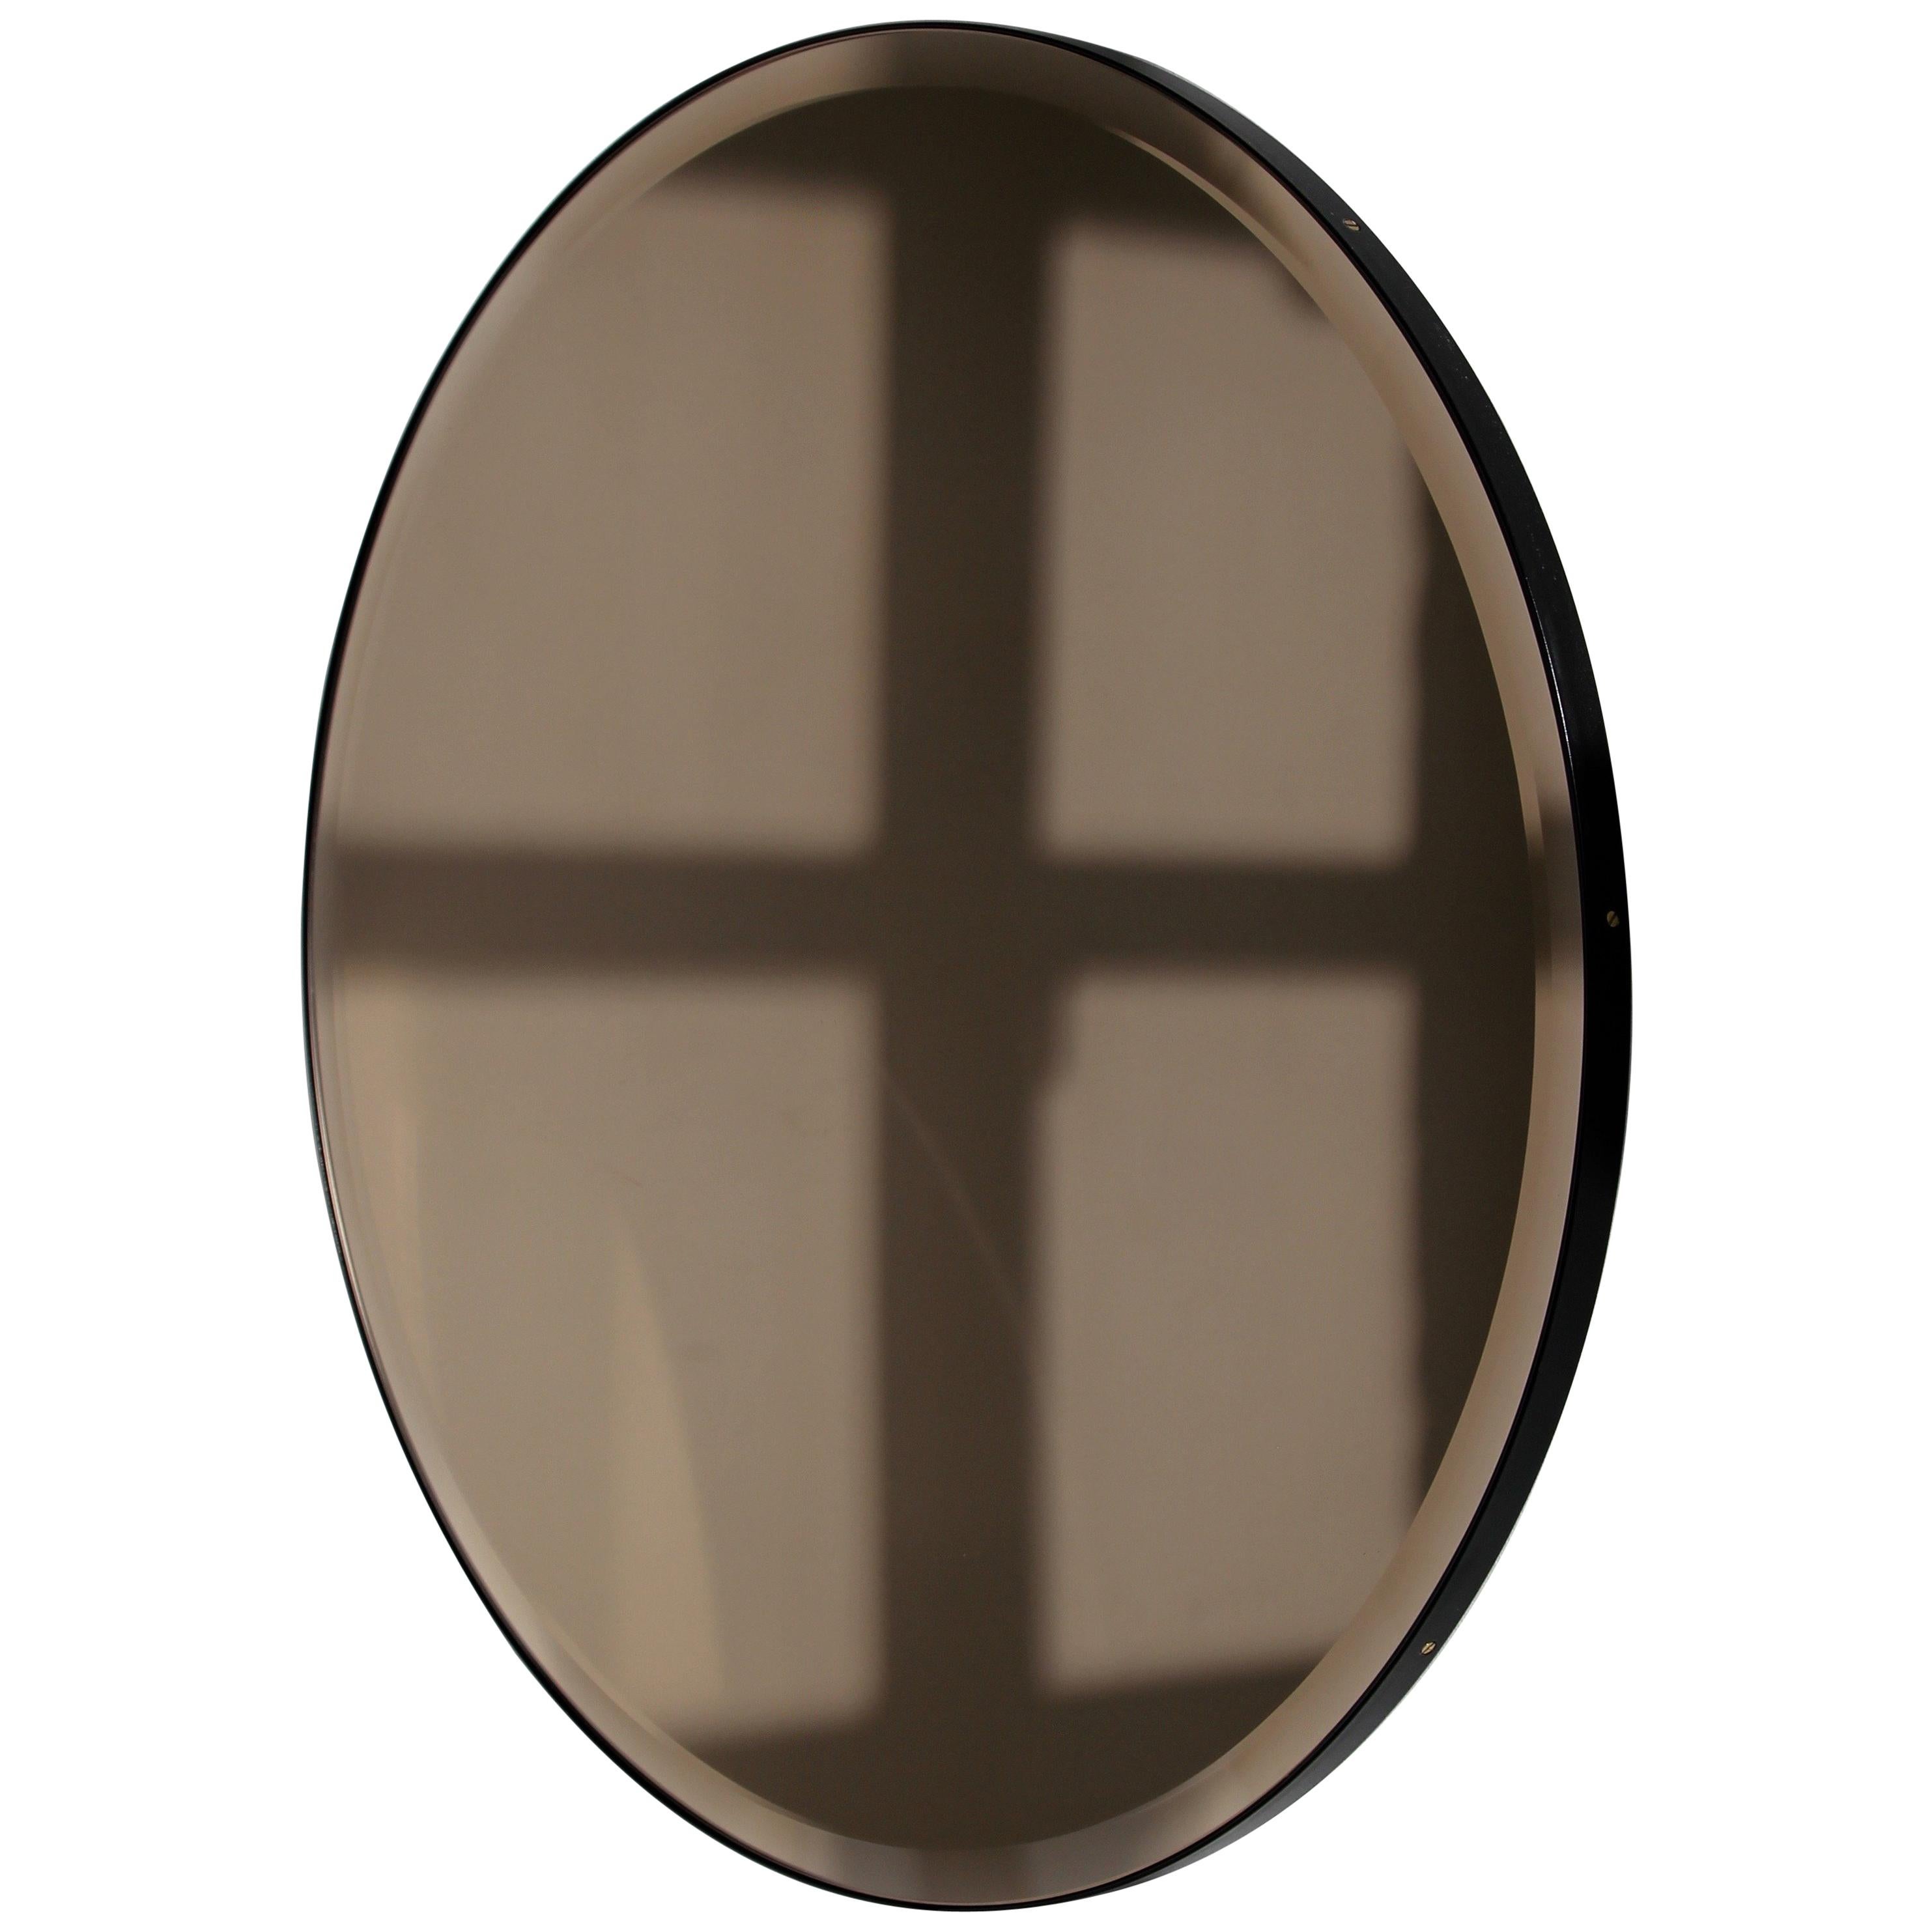 Miroir rond décoratif biseauté teinté bronze avec un élégant cadre en aluminium peint par poudrage en noir. Conçu et fabriqué à la main à Londres, au Royaume-Uni.

Les miroirs de taille moyenne, grande et extra-large (60, 80 et 100 cm) sont équipés